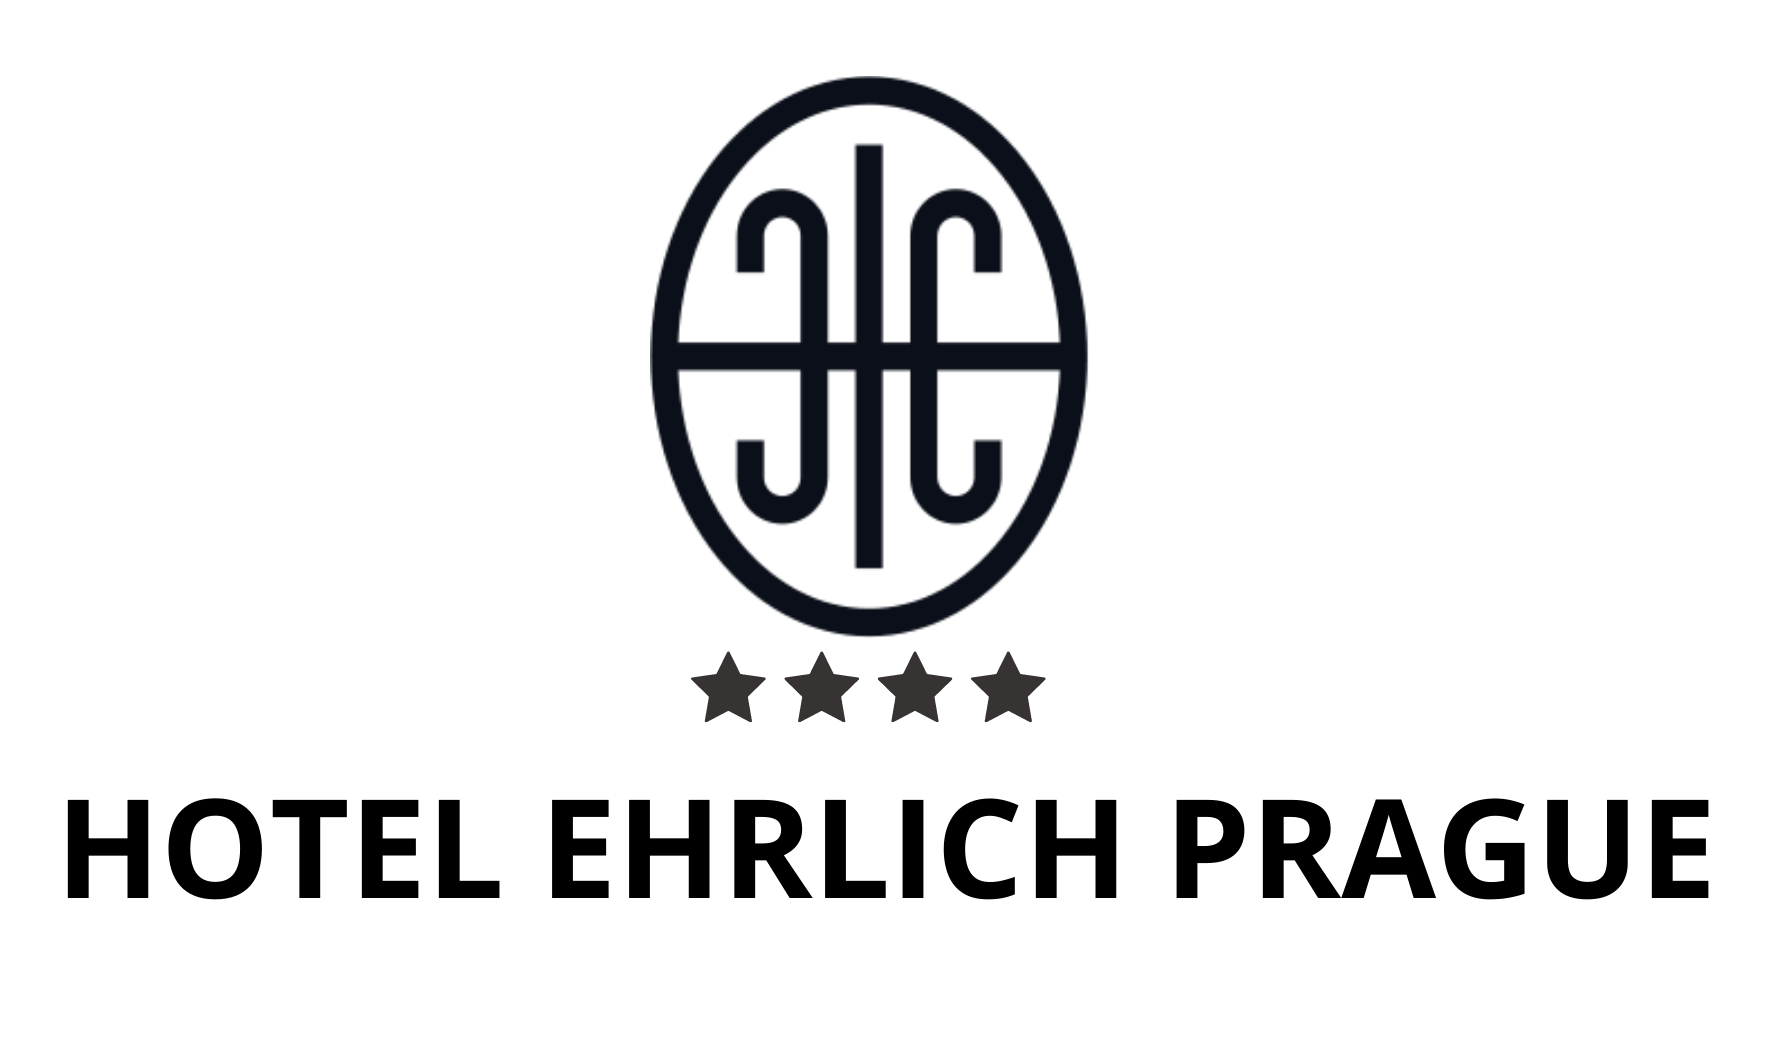 Hotel Ehrlich Prague - OFFICIAL WEBSITE